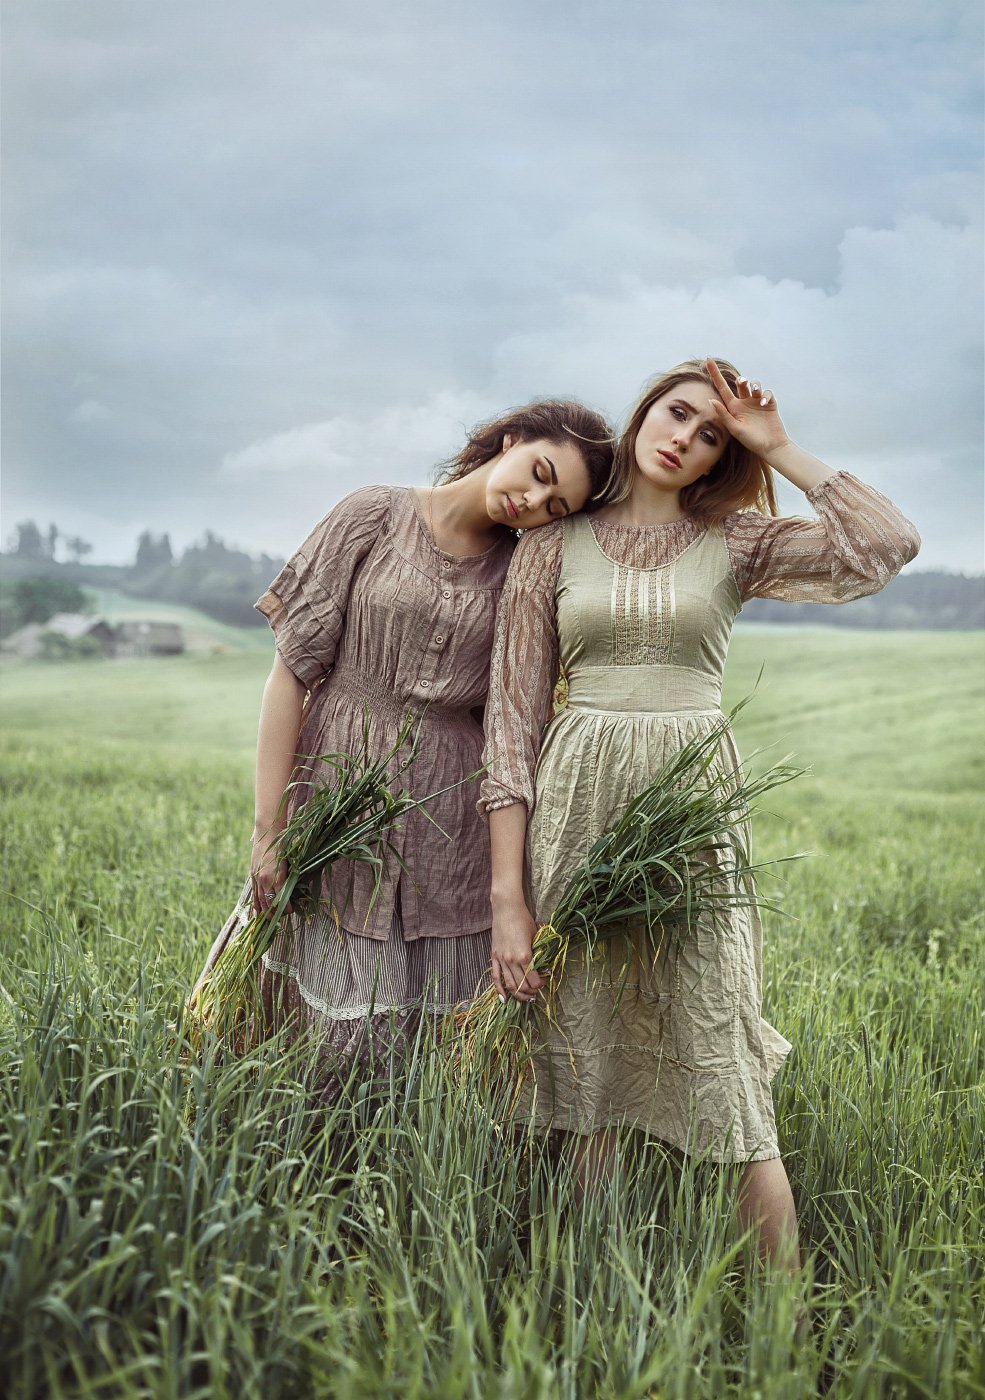 поле, трава, лето, урожай, село, девушки, крестьянки, женский портрет, постановочное фото, Наталья Прядко